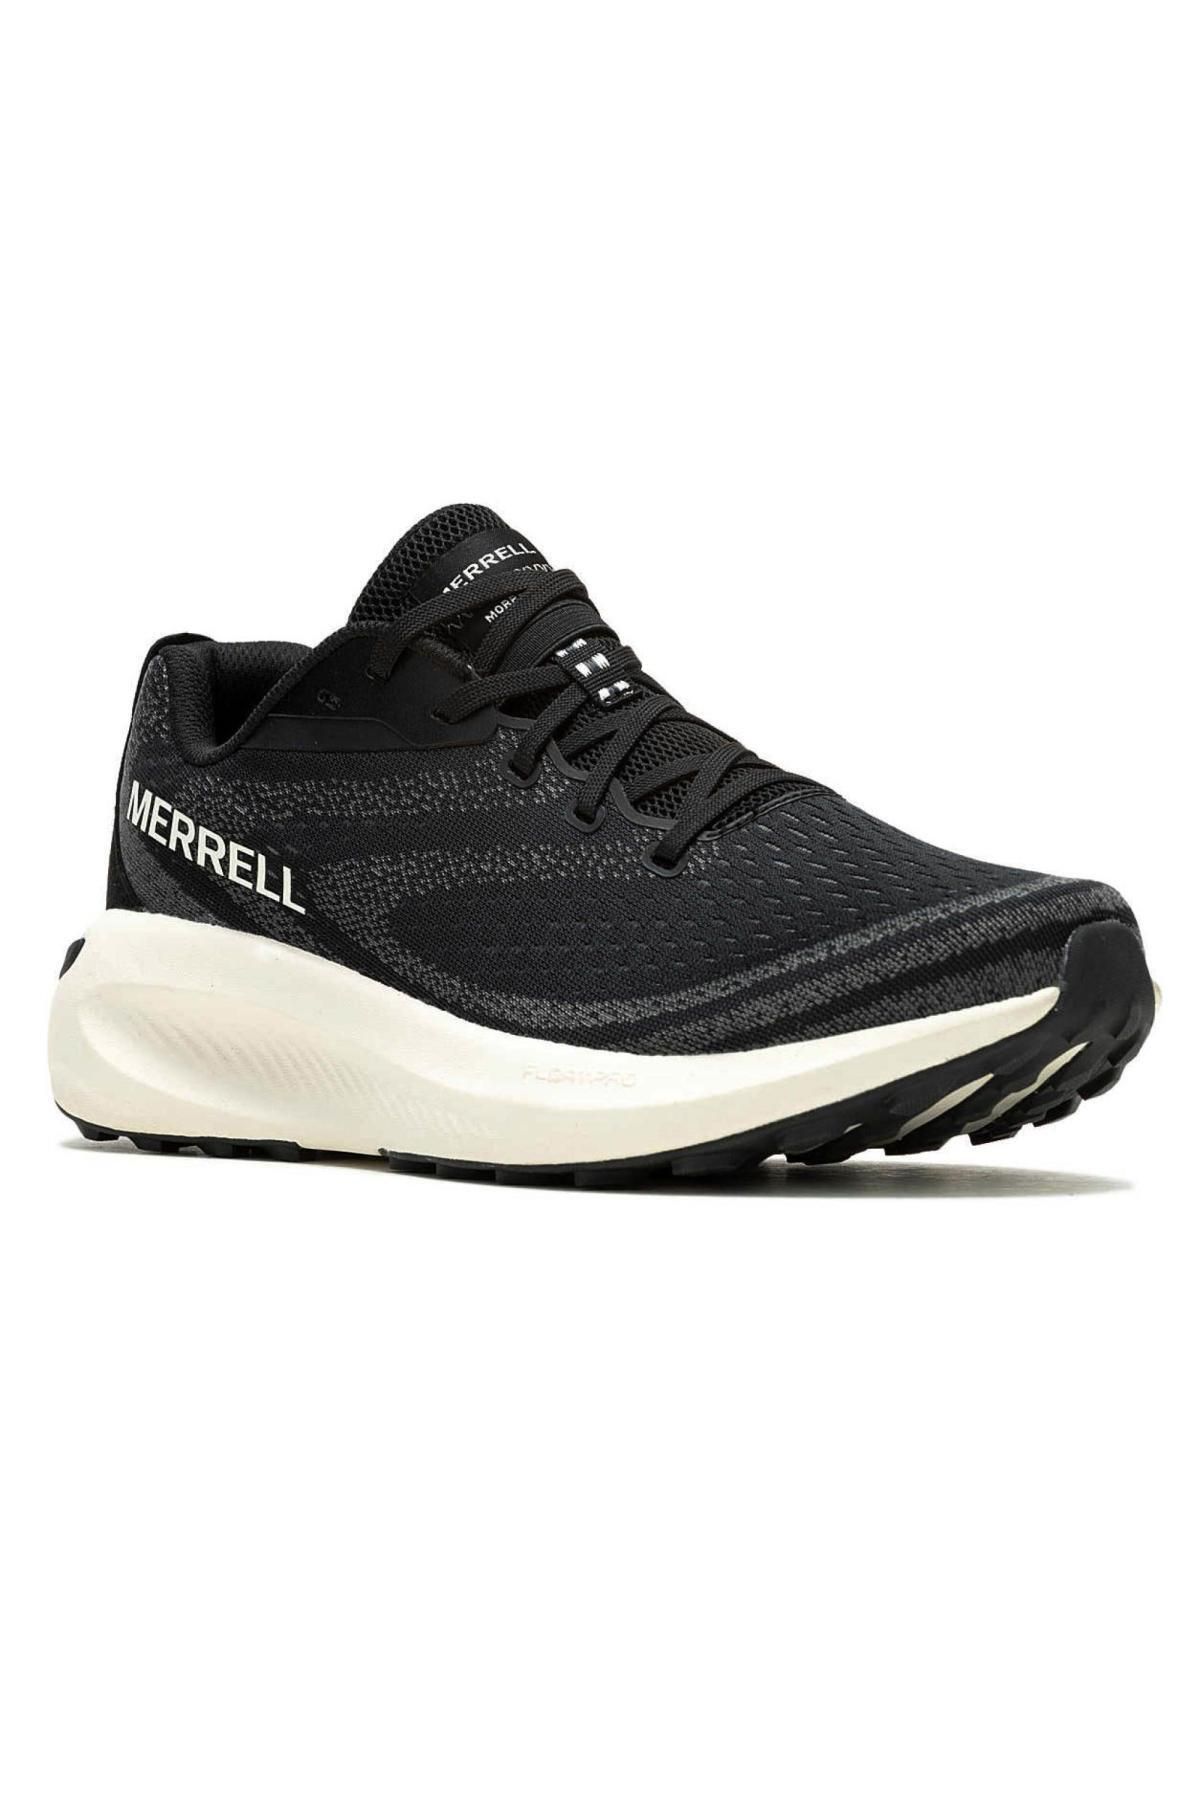 Merrell J068132 Morphlite Koşu Siyah Kadın Spor Ayakkabı